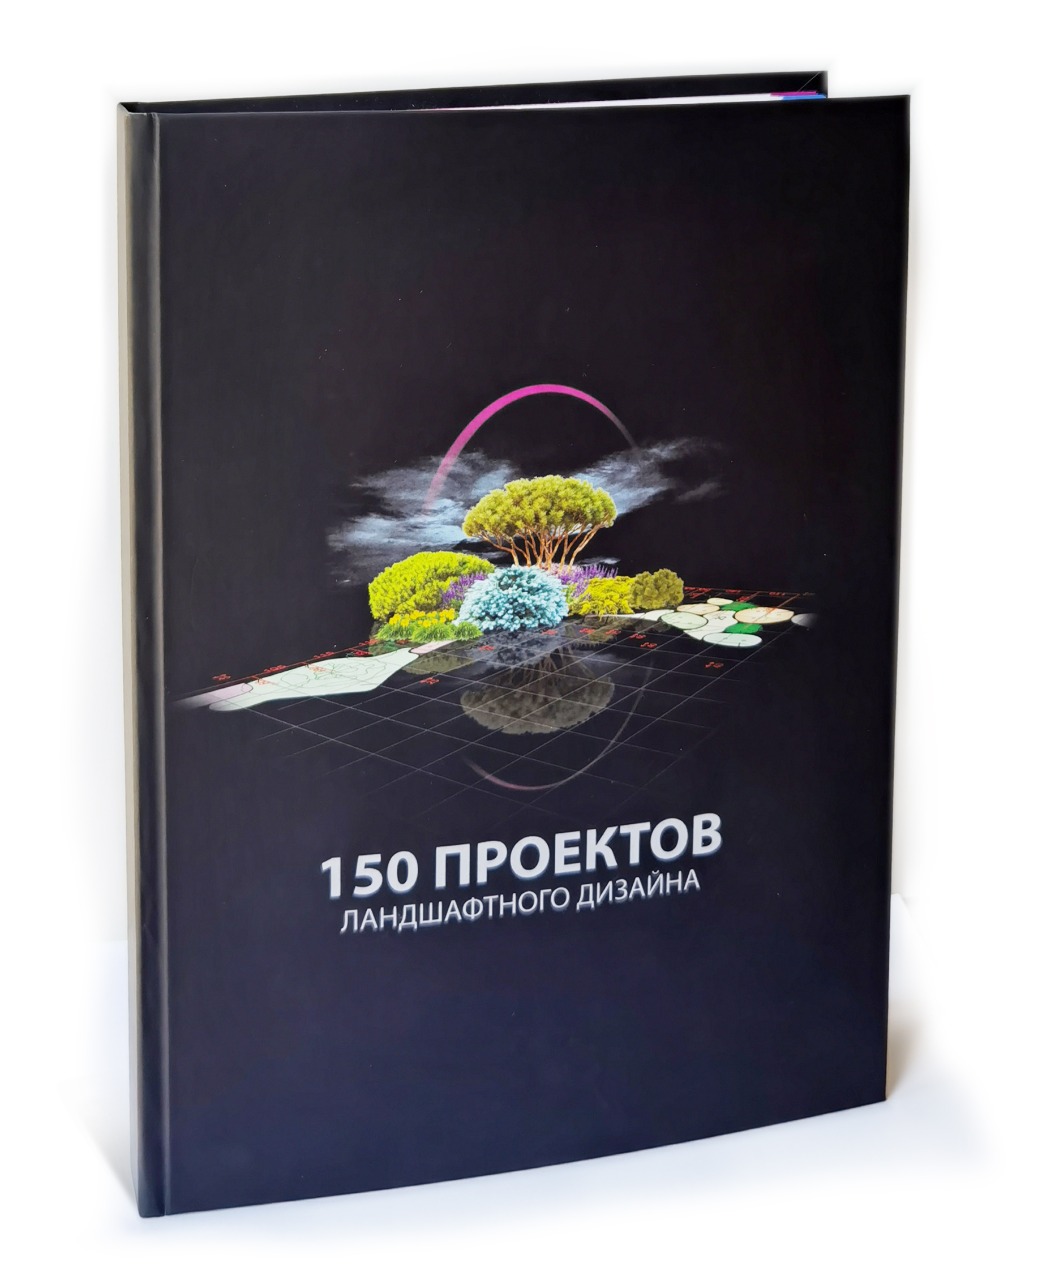 Купить Книга 150 проектов ландшафтного дизайна (https://design.florini.ru) - в питомнике Флорини